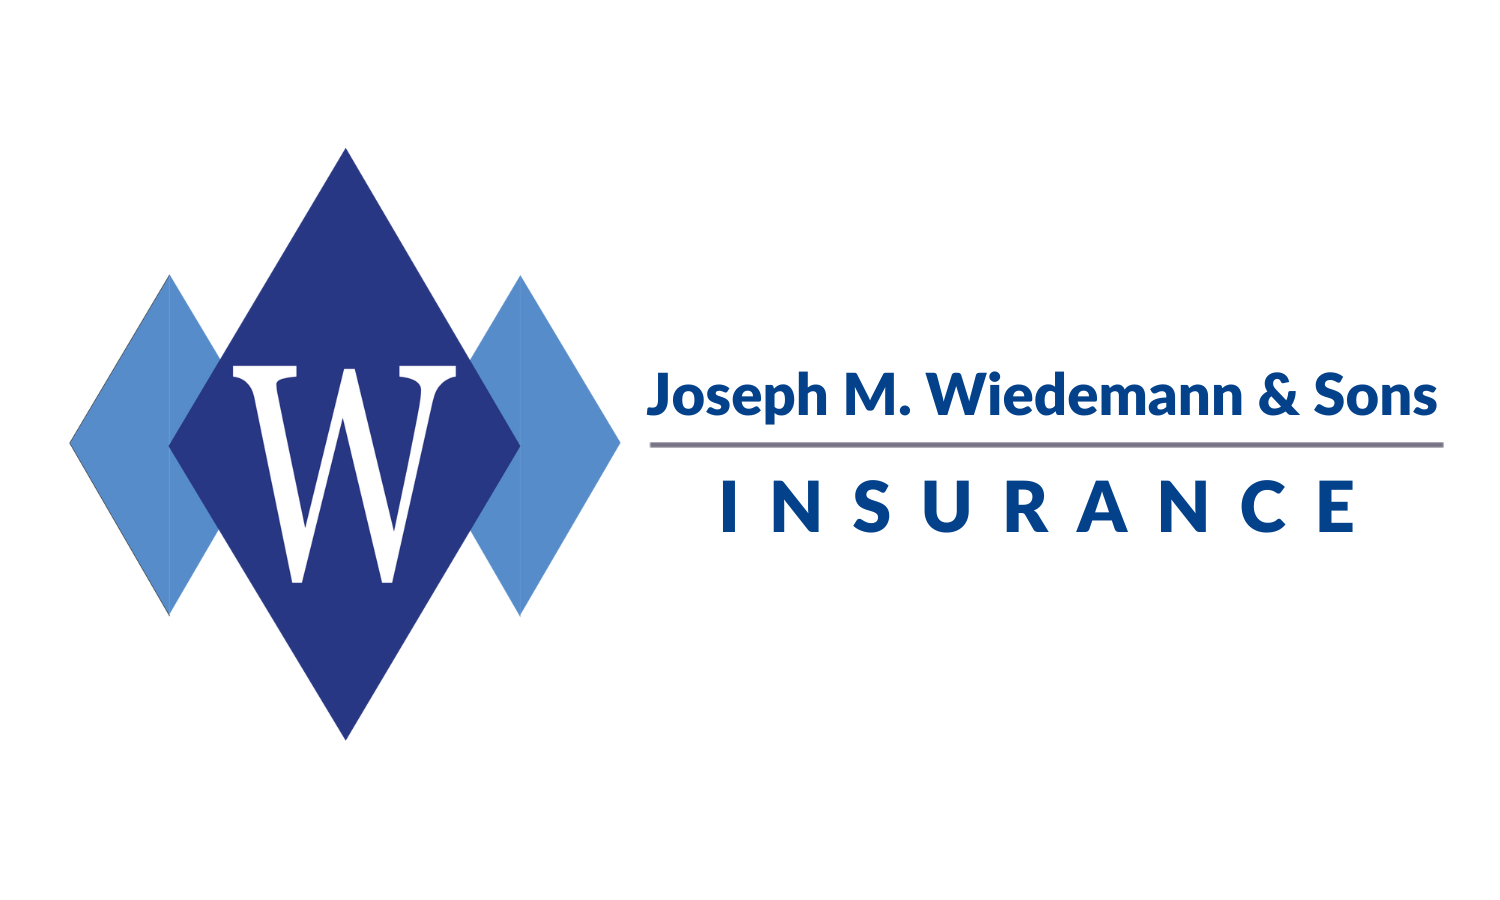 Joseph M. Wiedemann & Sons Inc